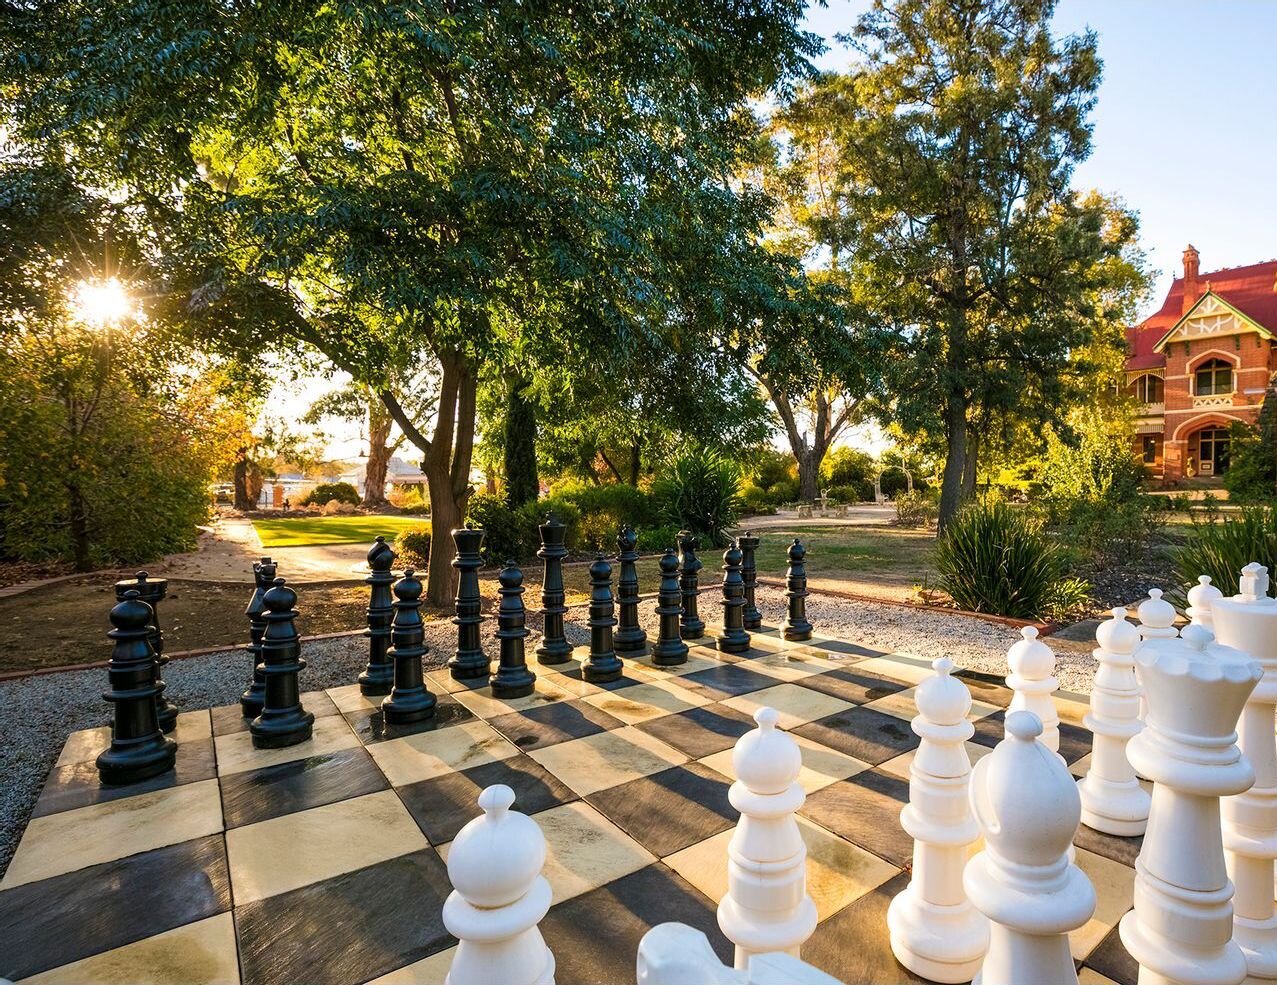 Chess Set Trimmed.jpg